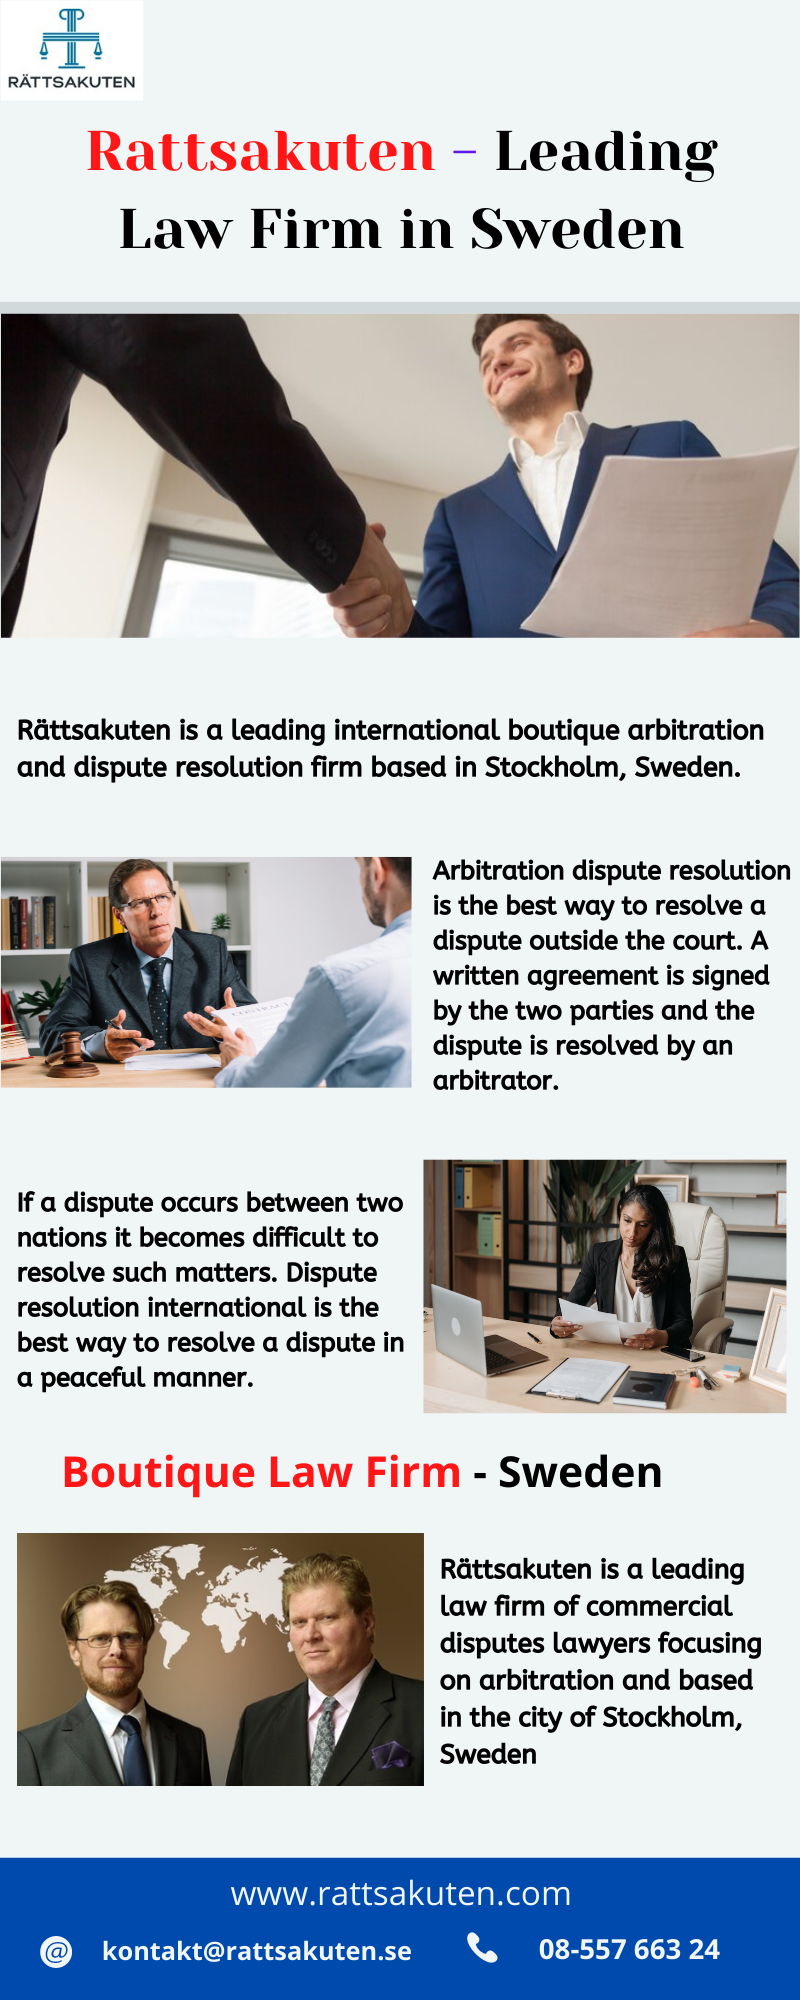 Rättsakuten – Leading Law Firm in Sweden